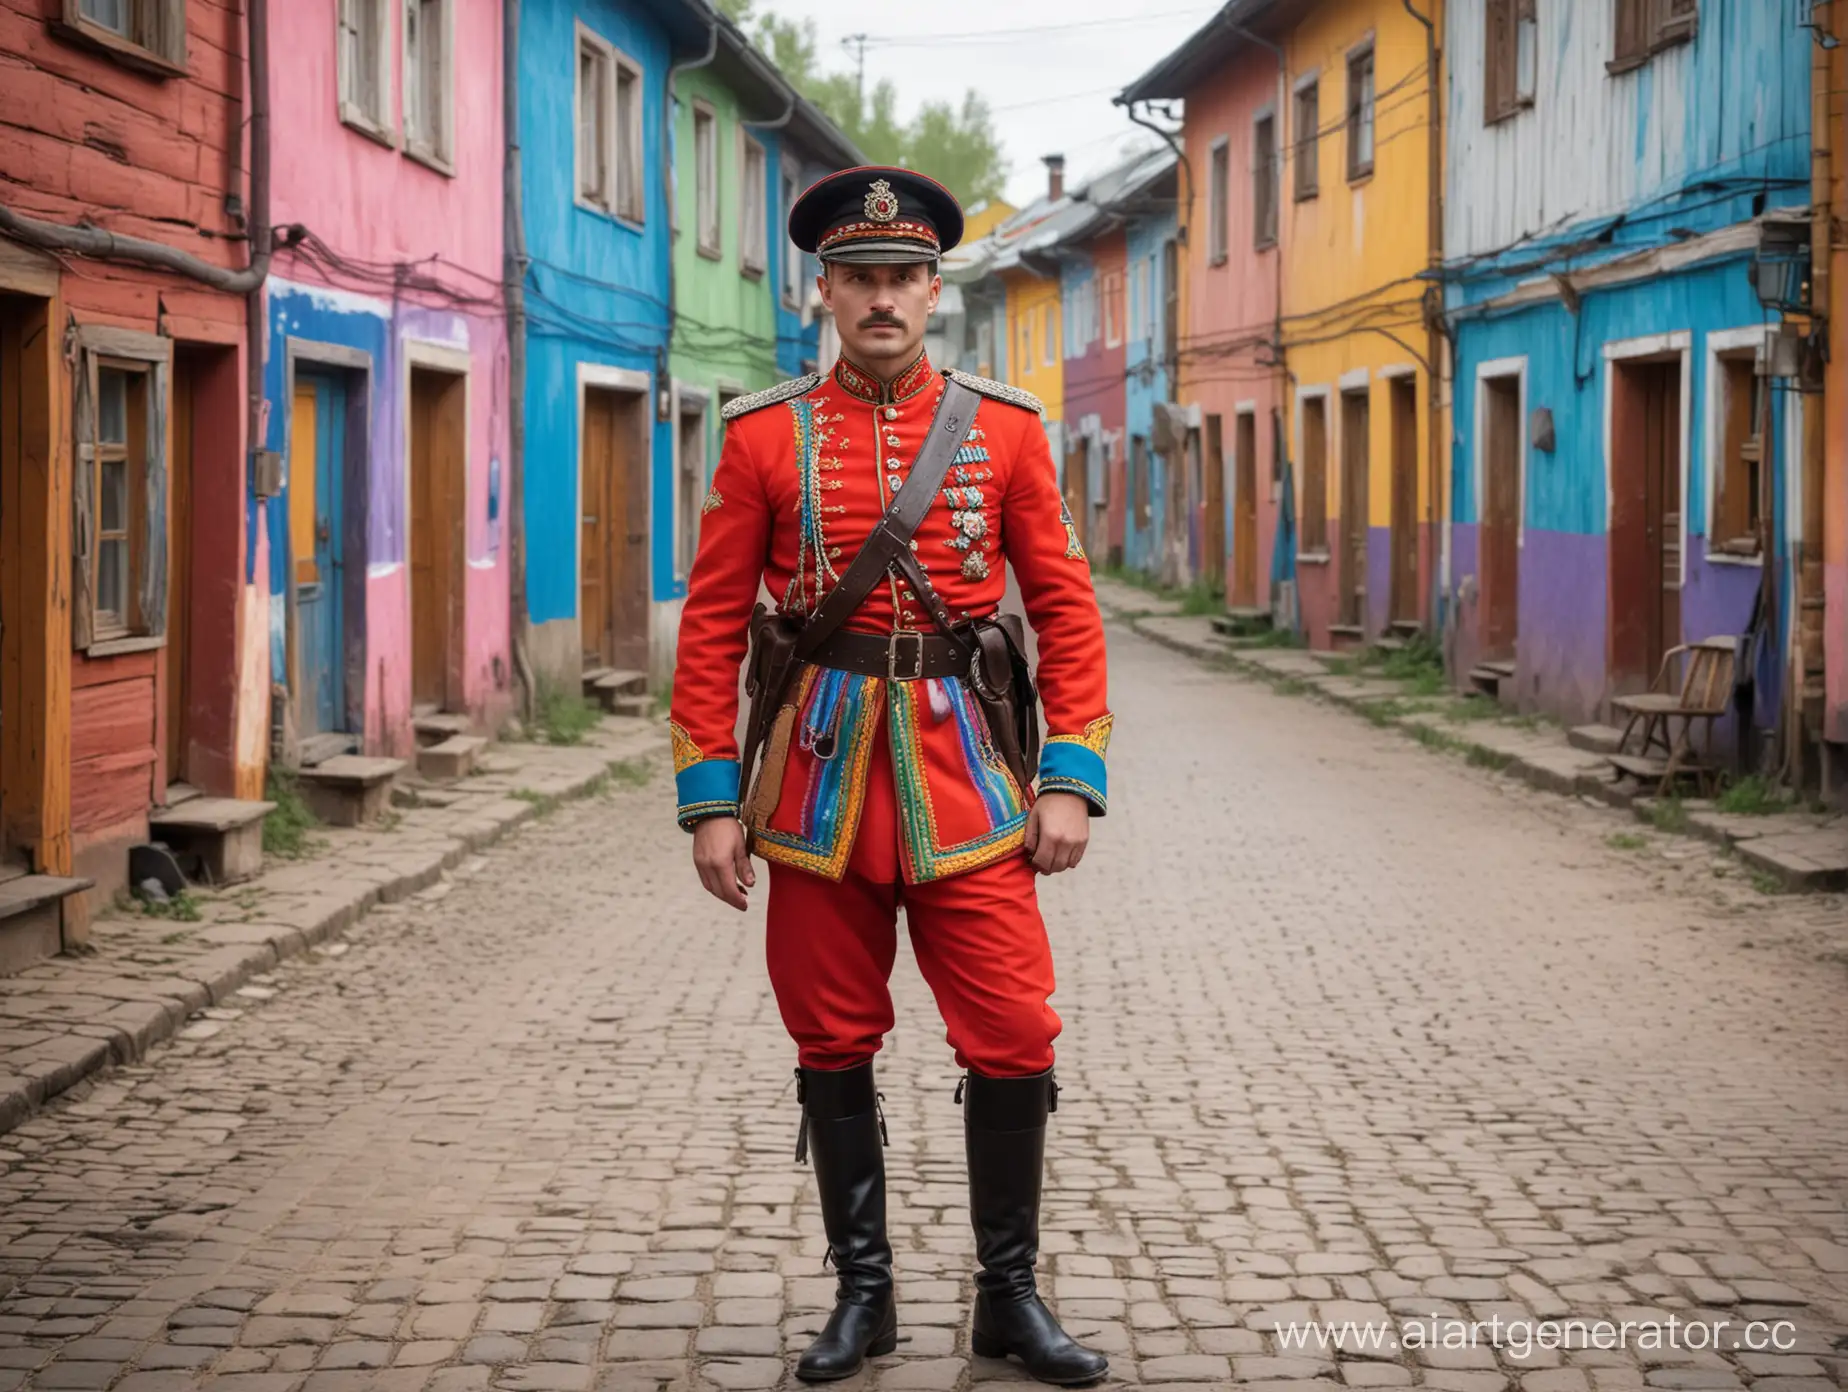 Ярко одетый военный. в яркой разноцветной форме. грабит старую русскую красочную деревню с красивыми людьми одетыми в разноцветную одежду. Вся одежда всех людей раскрашена во все цвета радуги.